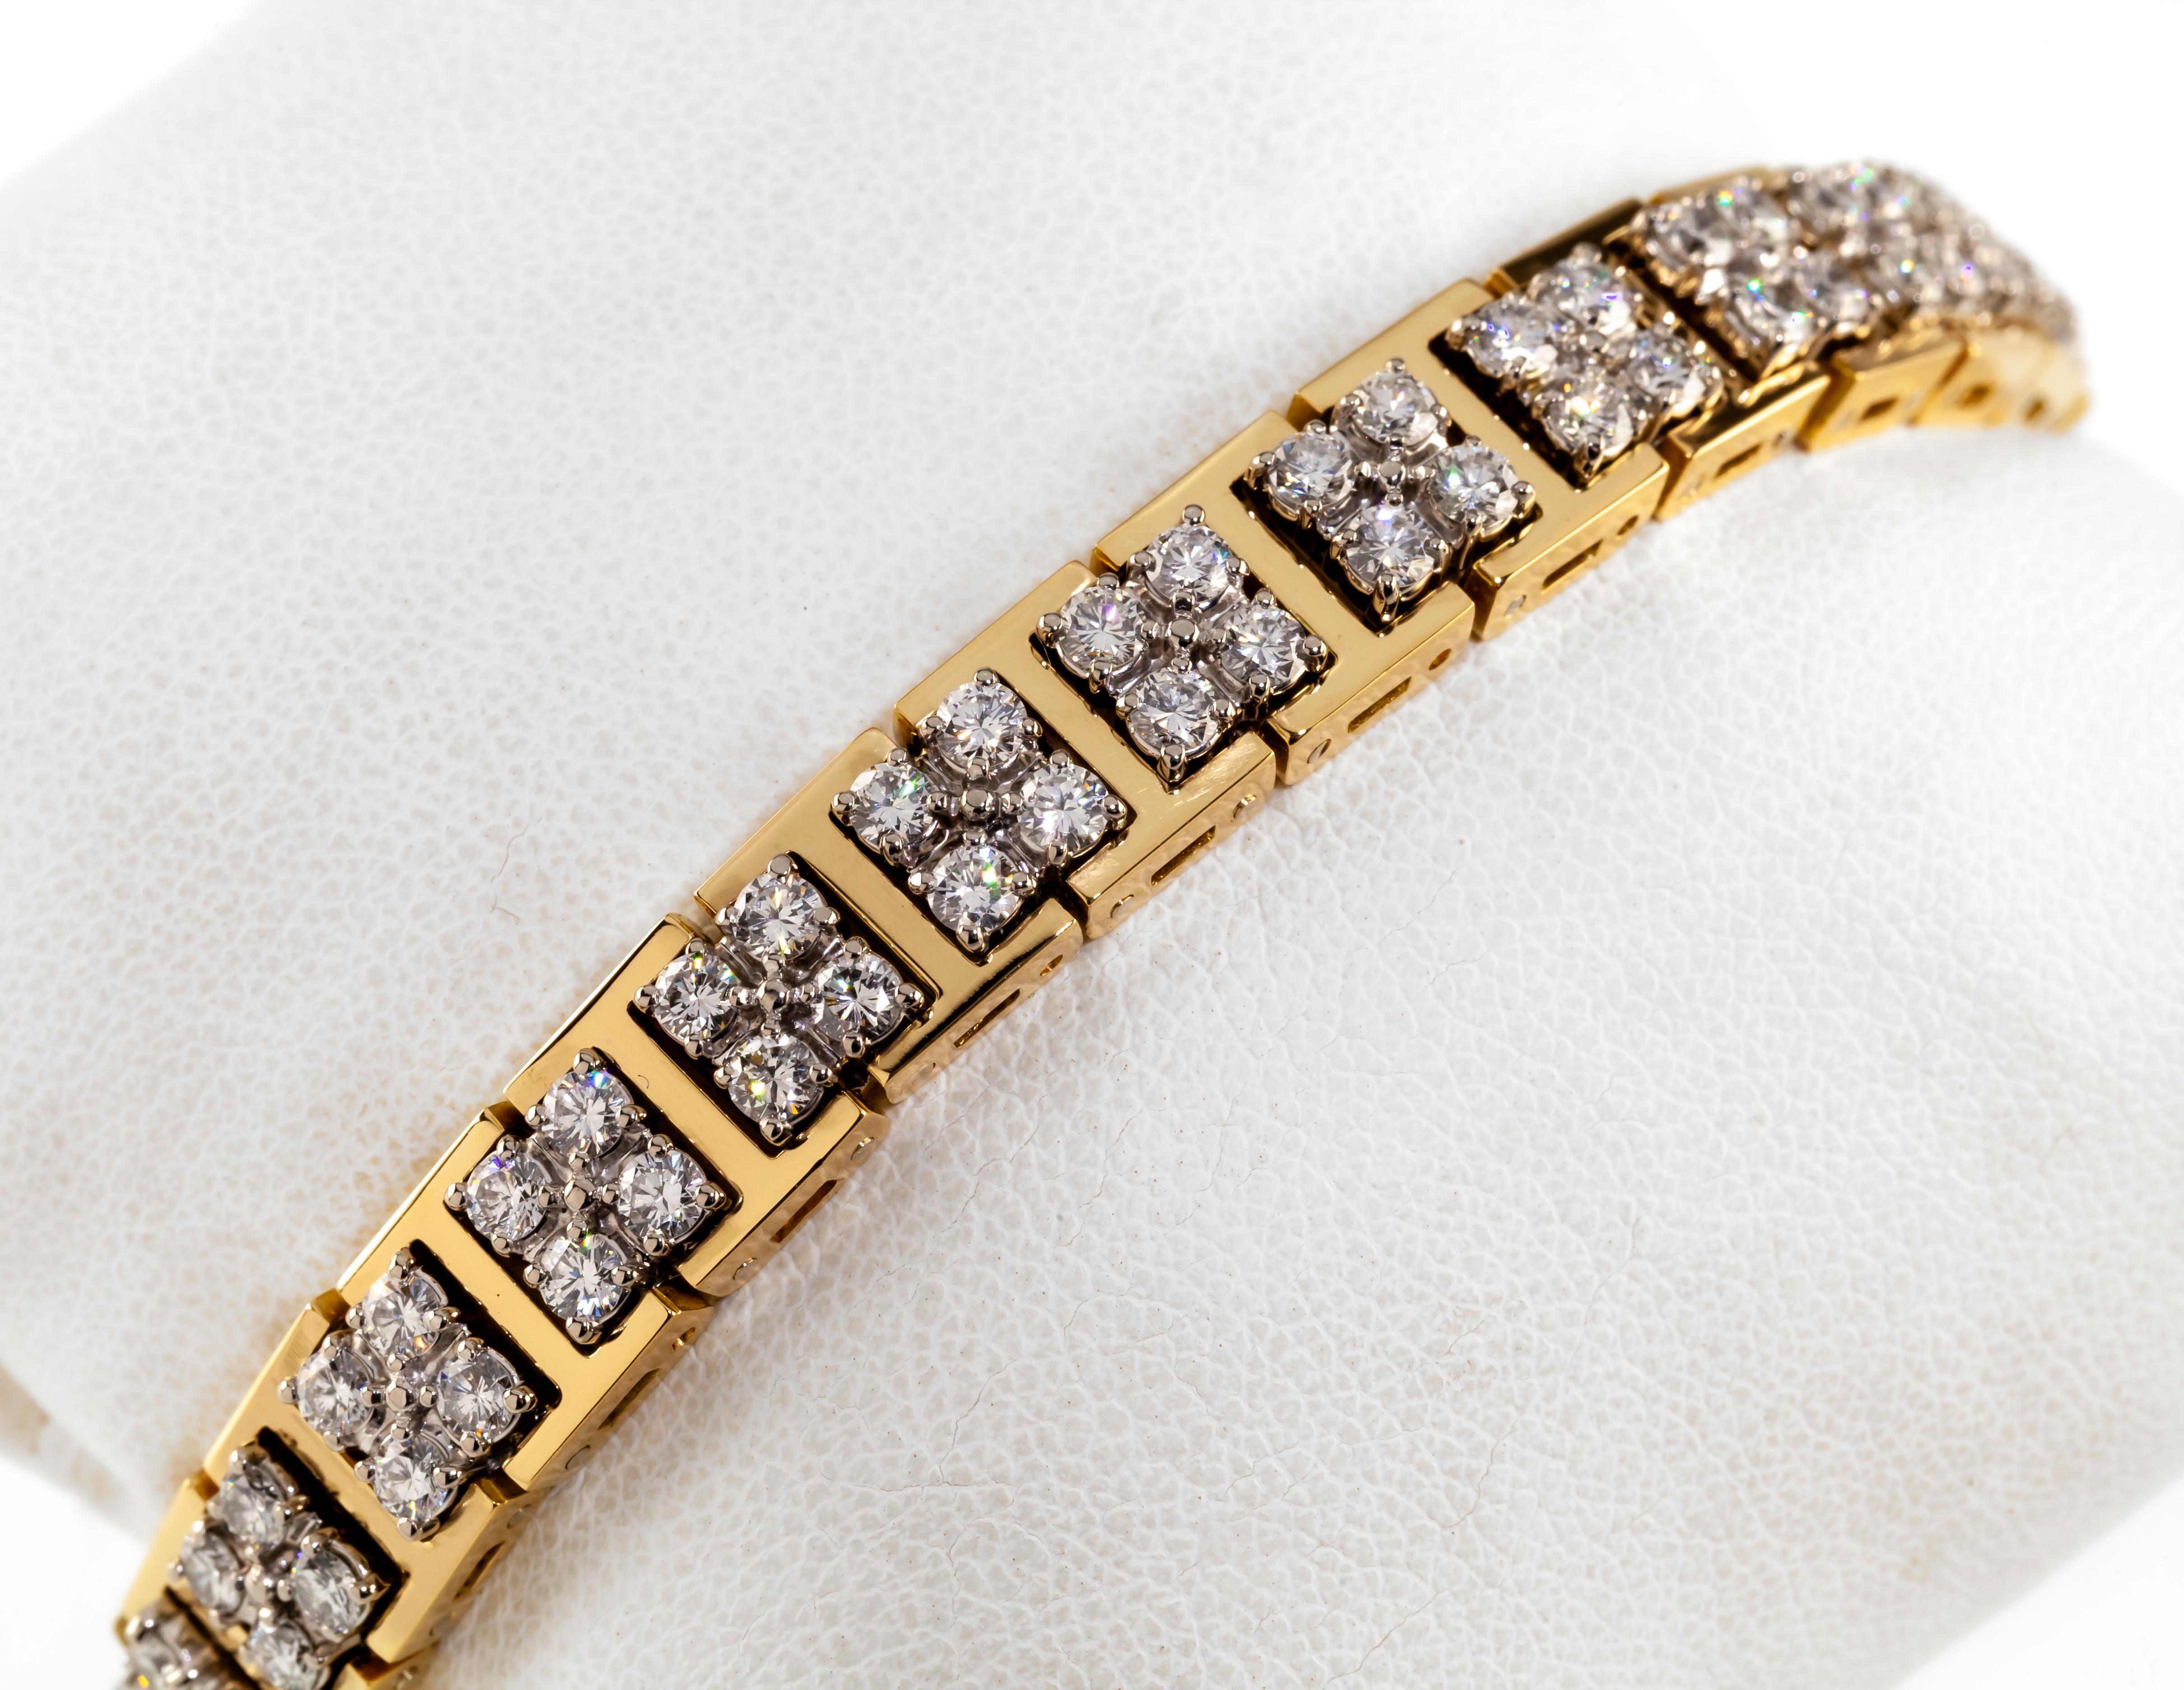 Wunderschönes Vintage Jabel Add-A-Link-Armband
Mit 14 Vier-Diamanten-Stationen in 18k Gelb/Weißgold
Jeder Stein ca. 0,10 ct
Gesamtkaratgewicht = ca. 5.6 Karat
Durchschnittliche Farbe = F oder besser
Durchschnittliche Klarheit = VS oder